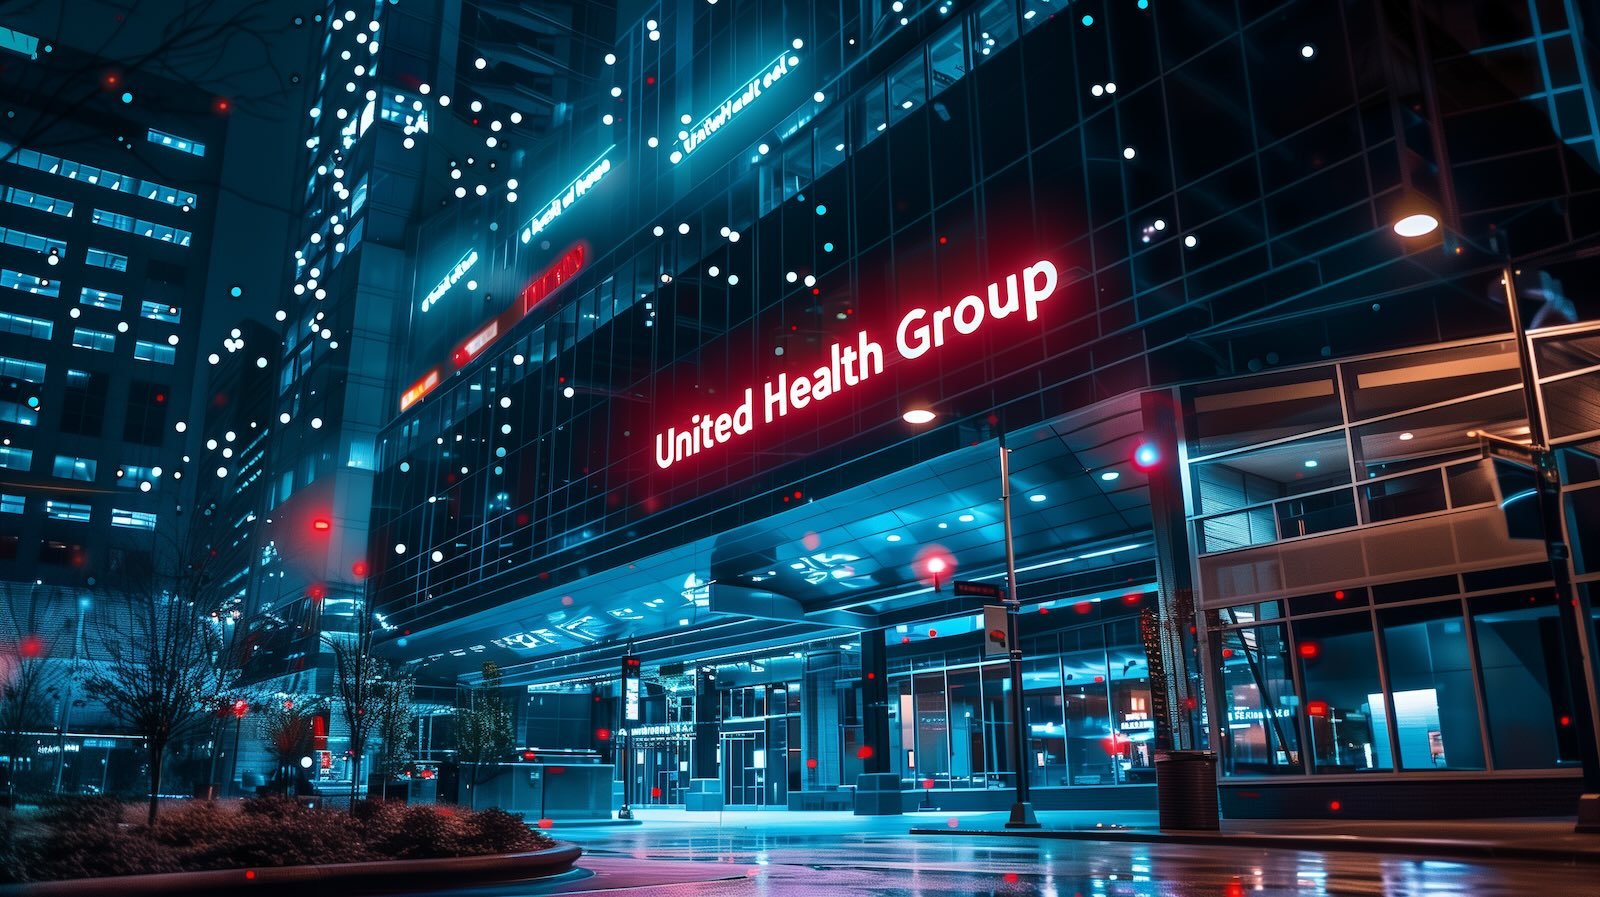 UnitedHealth Group UHG